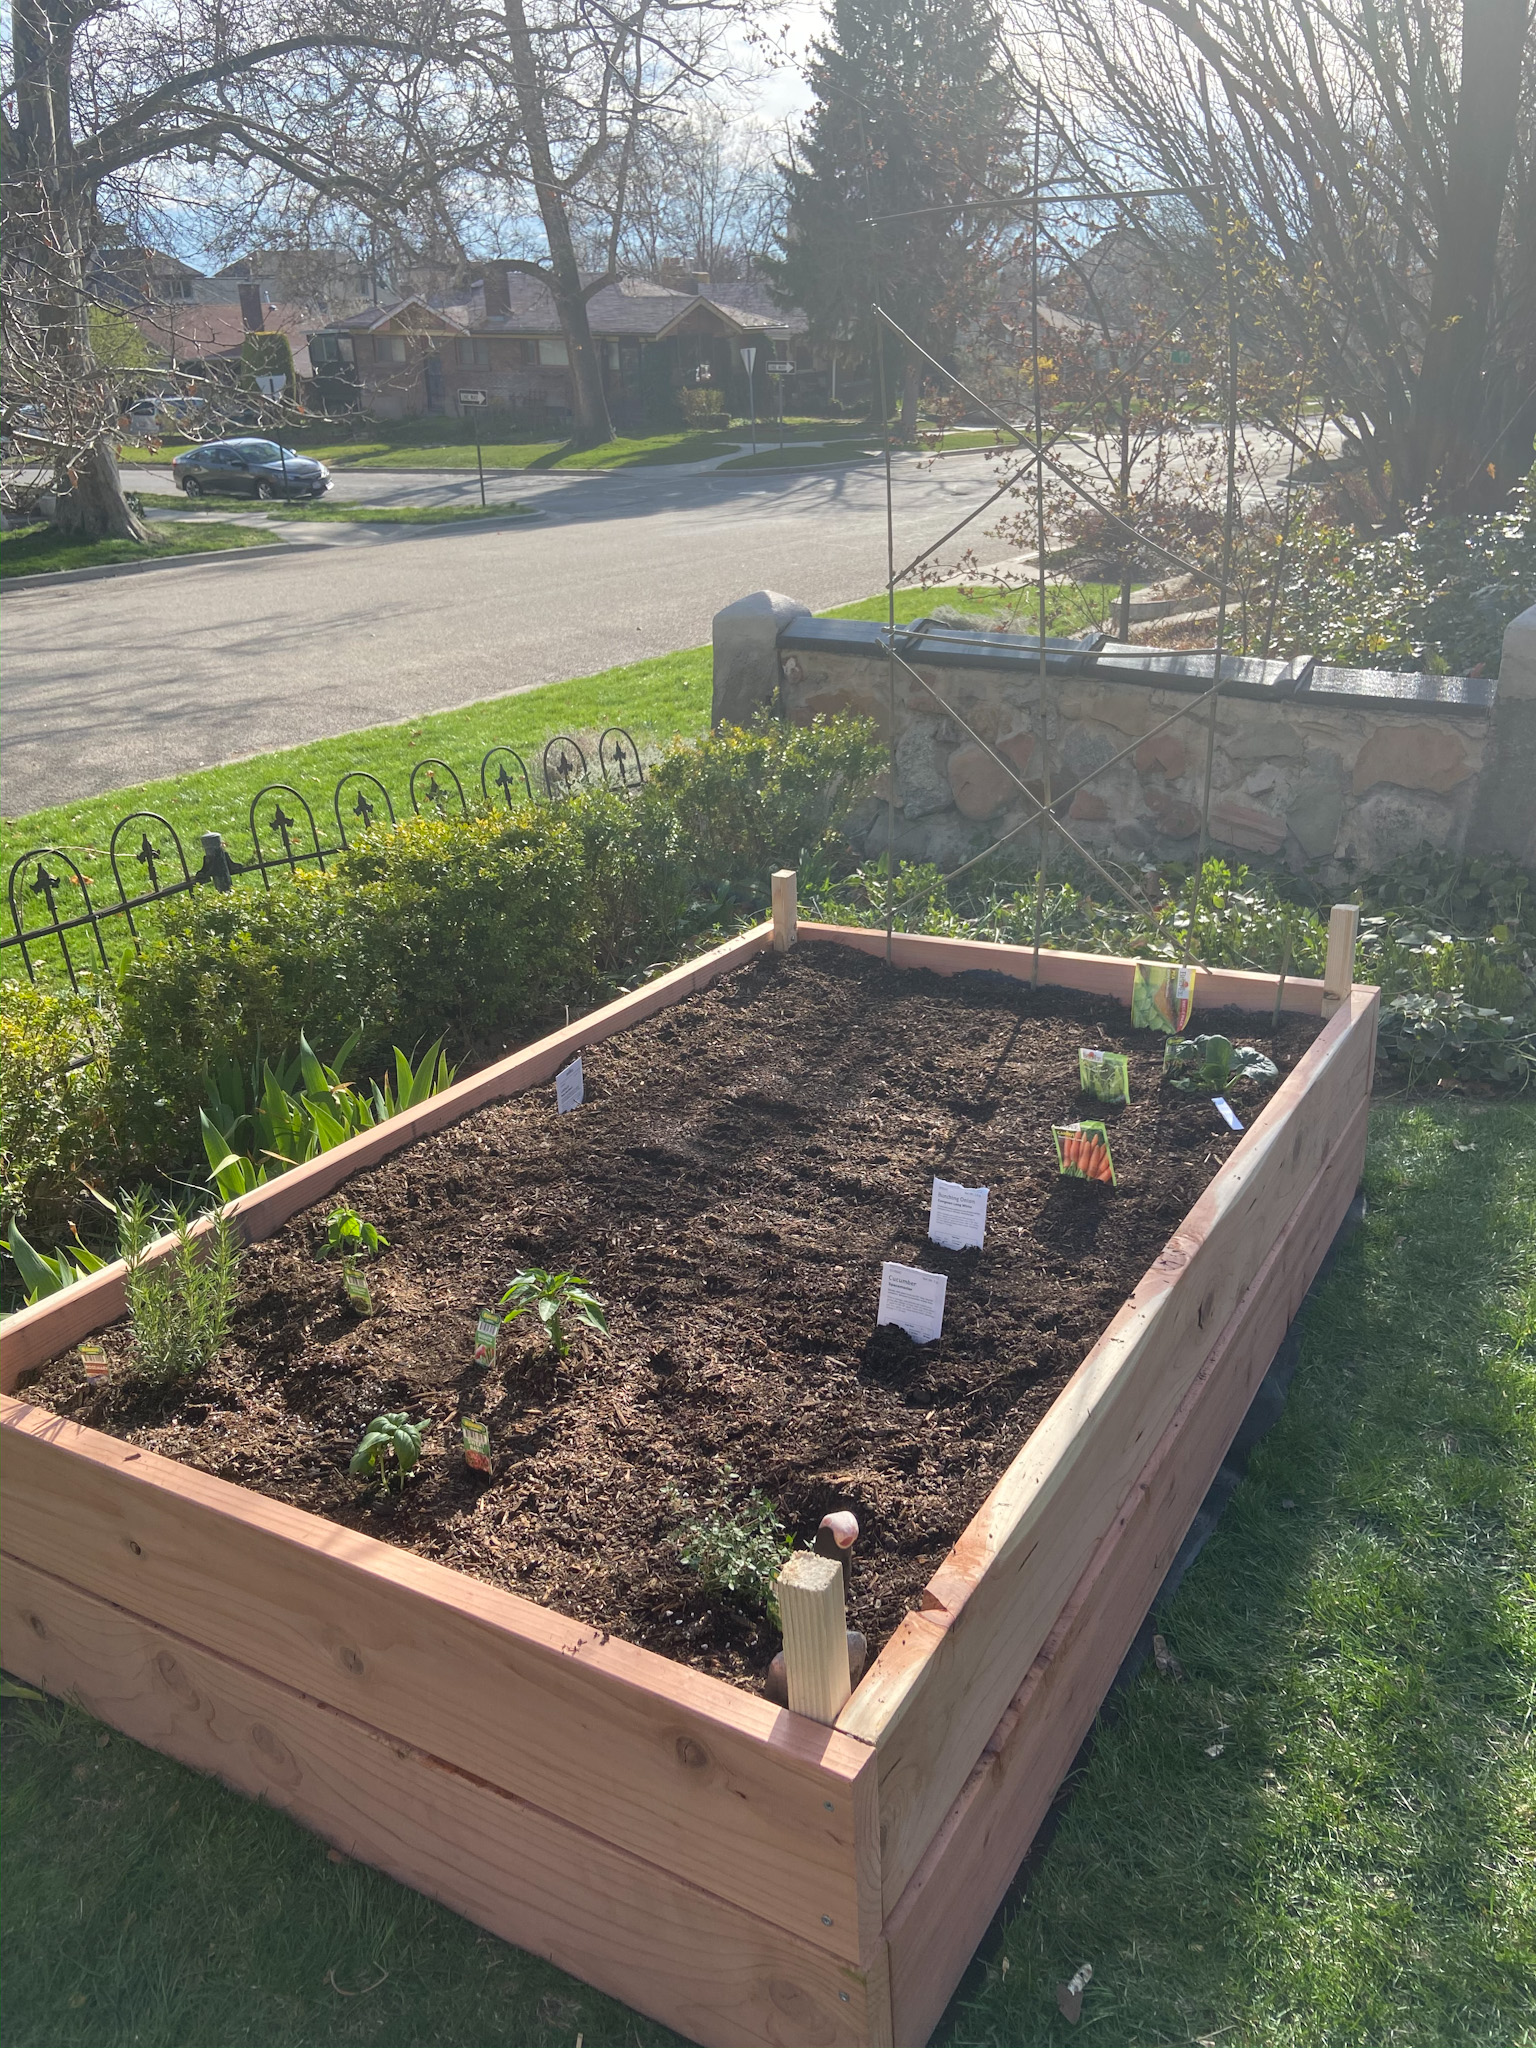 How To Make A Simple Garden Planter Box, How To Build An Easy Garden Box